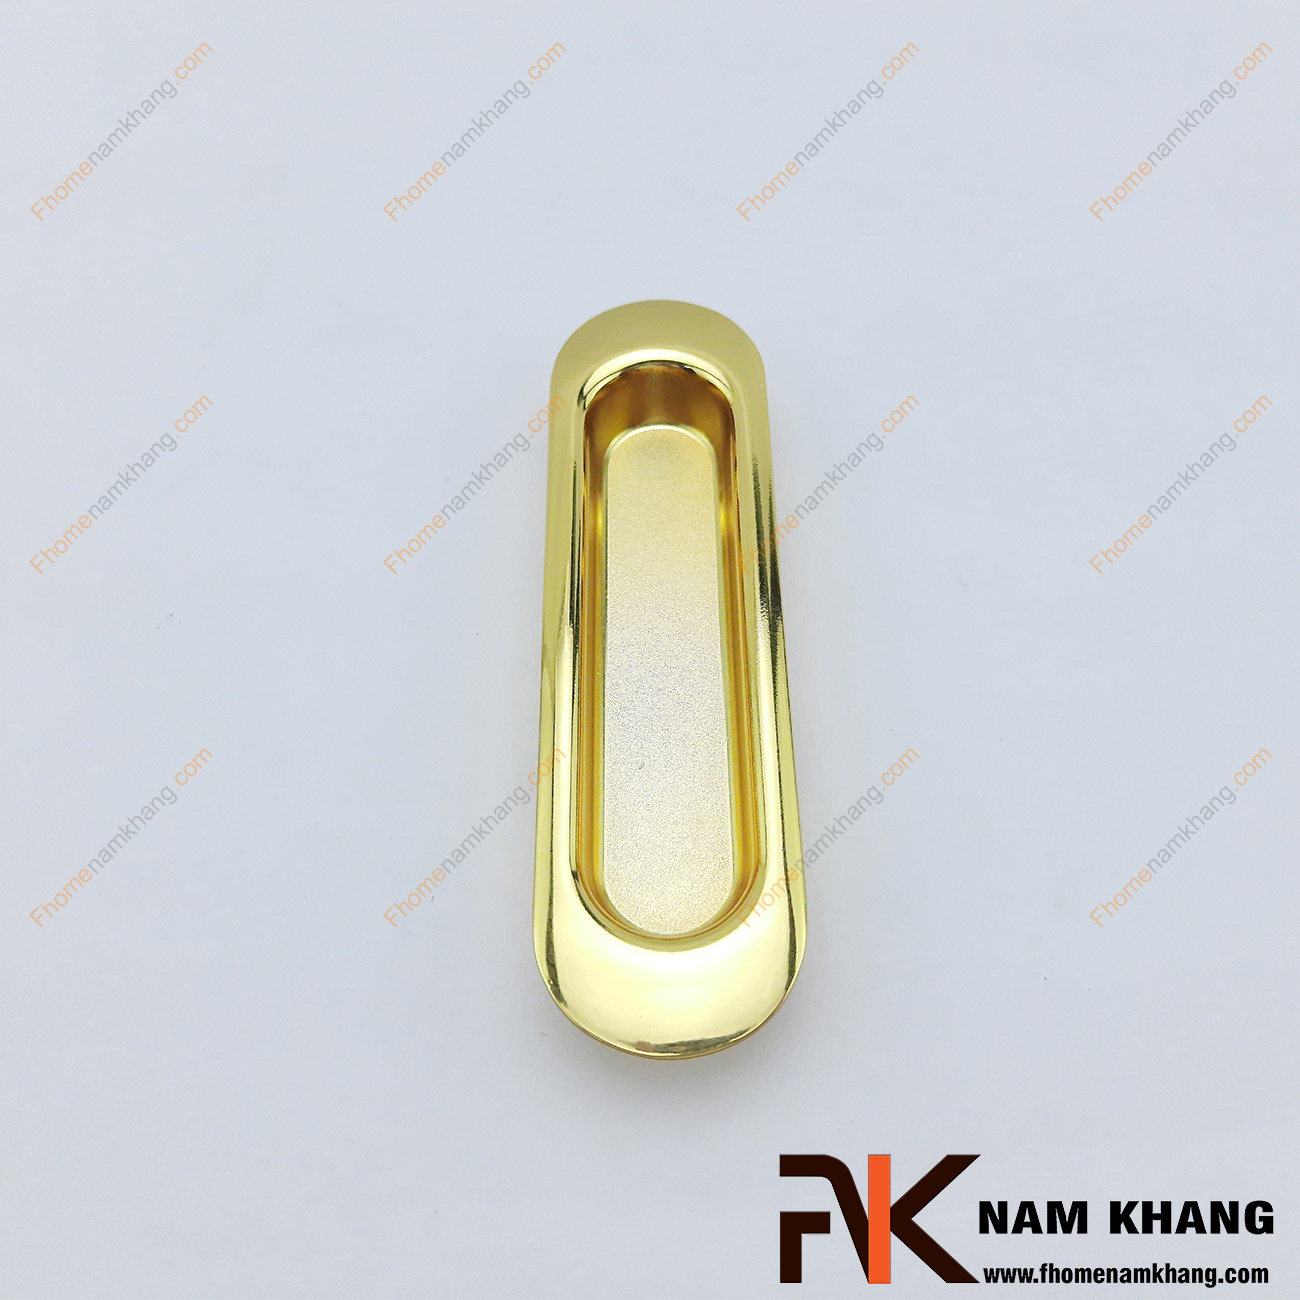 Tay nắm âm tủ hợp kim mạ vàng NK061-V có thiết kế gọn nhẹ và đơn giản. Mang xu hướng tiết kiệm không gian và sử dụng làm phụ kiện cho những phong cách tủ trượt tại nơi bị hạn chế diện tích.